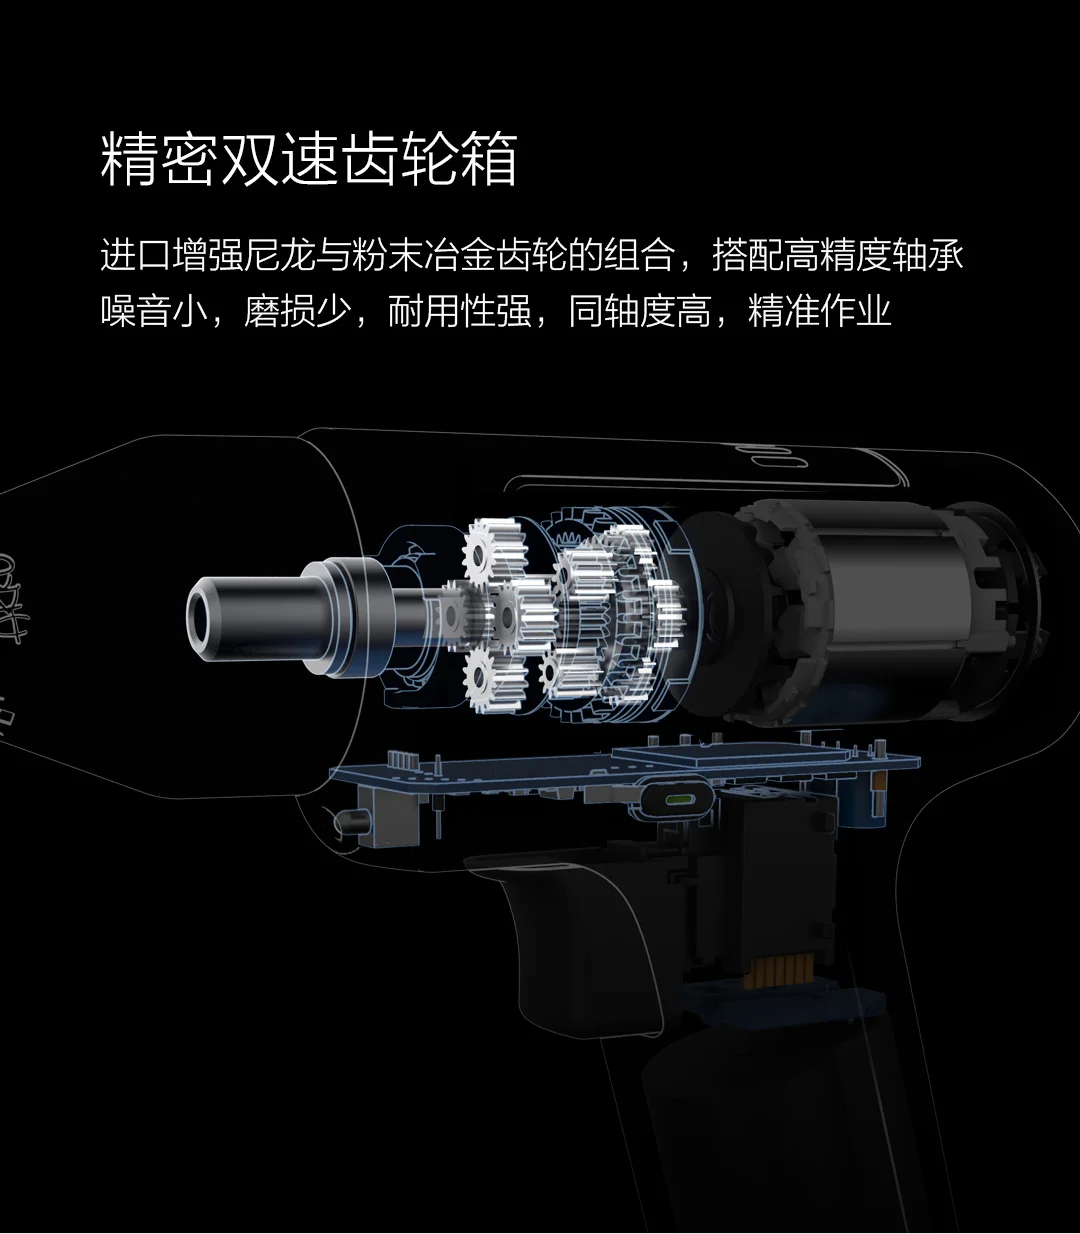 Xiaomi AKKU бесщеточная двухскоростная многофункциональная литиевая электрическая дрель Аккумуляторная дрель электрическая отвертка Мини Беспроводная 3,6 В